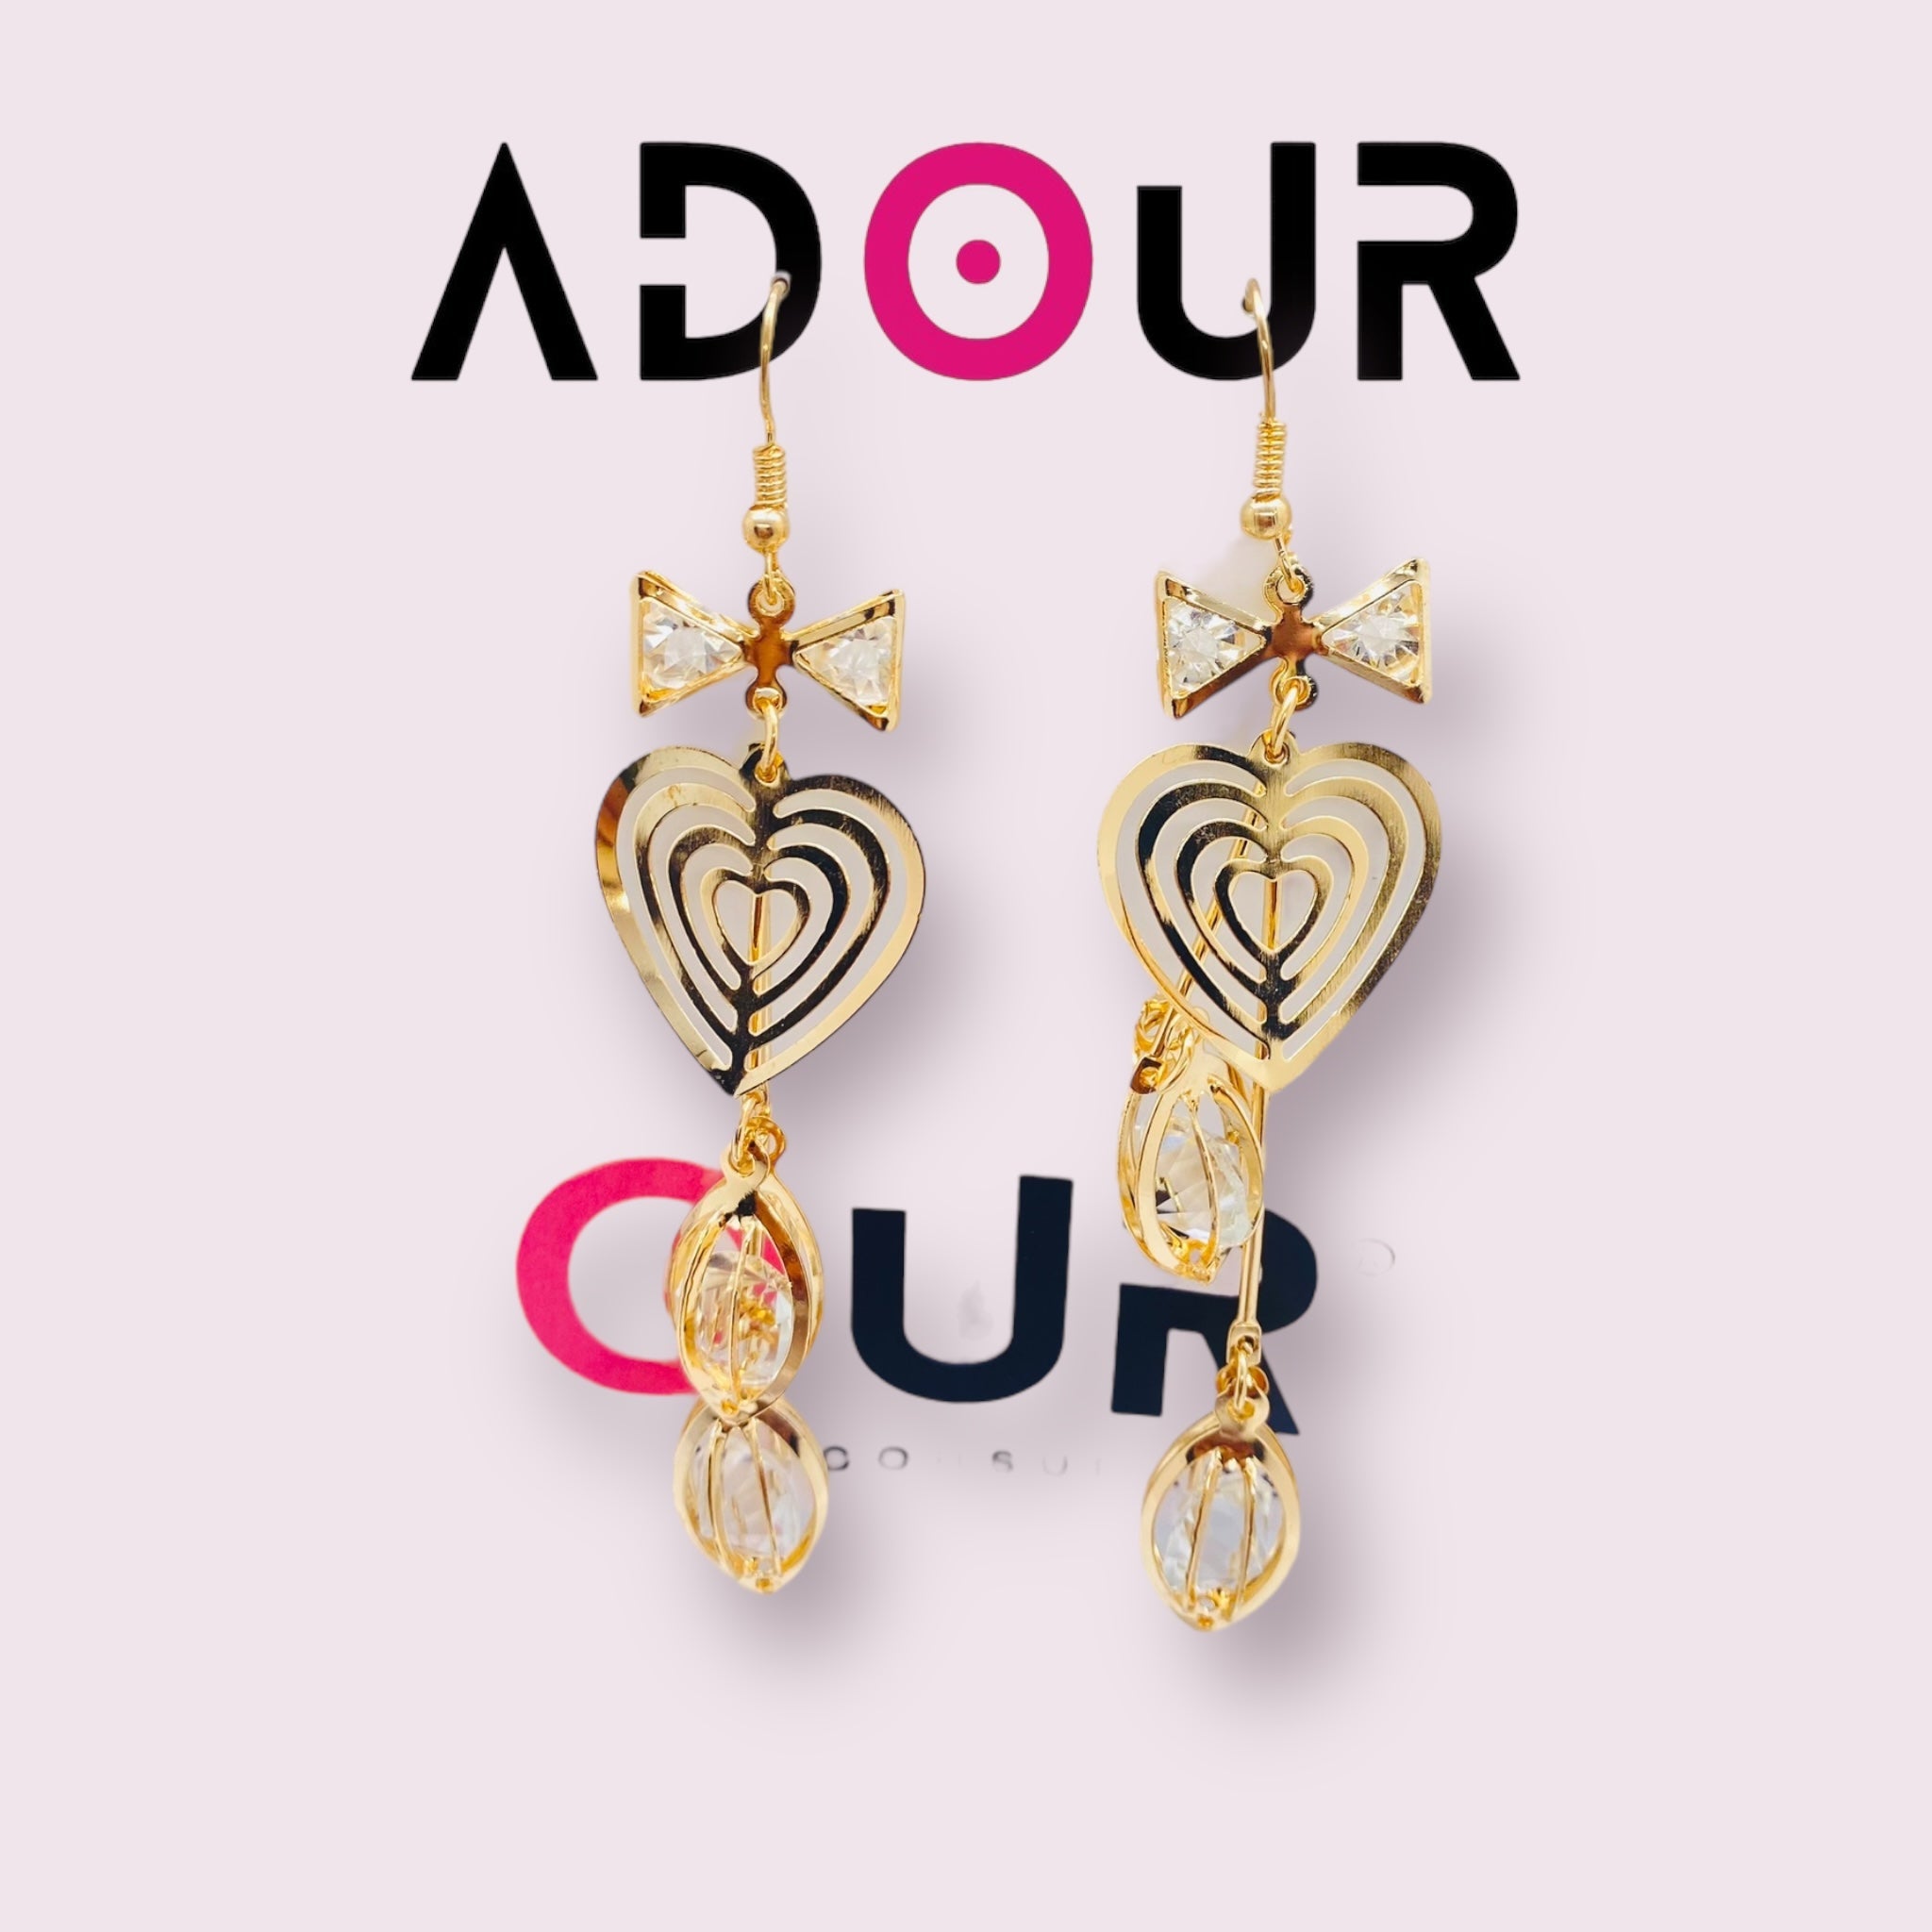 Adour Fancy Earrings LG66